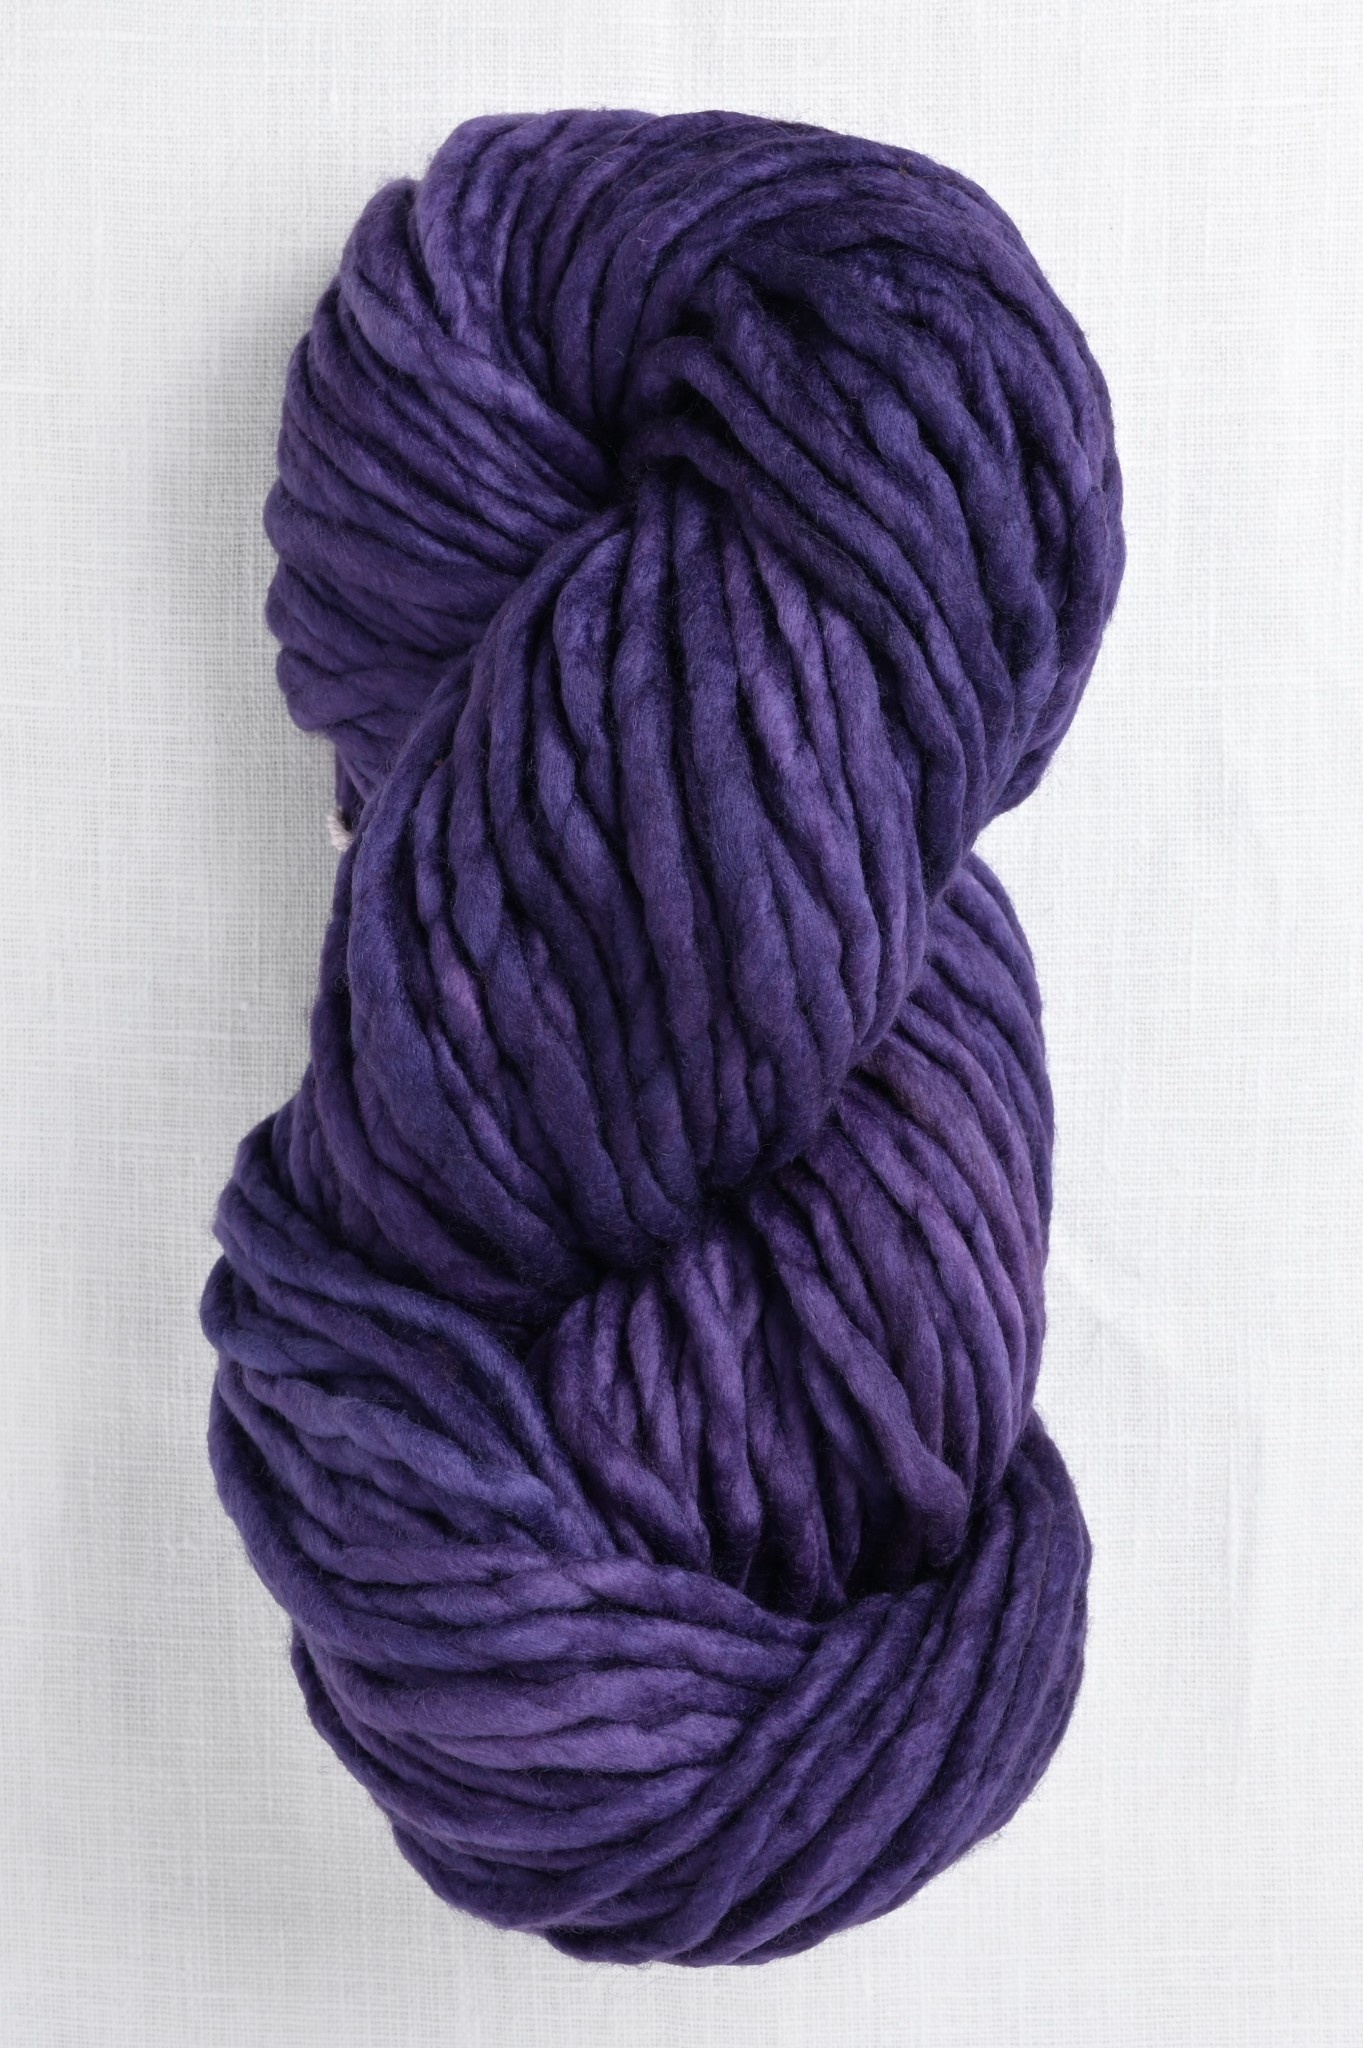 Malabrigo Rasta 808 Violeta Africana - Wool and Company Fine Yarn